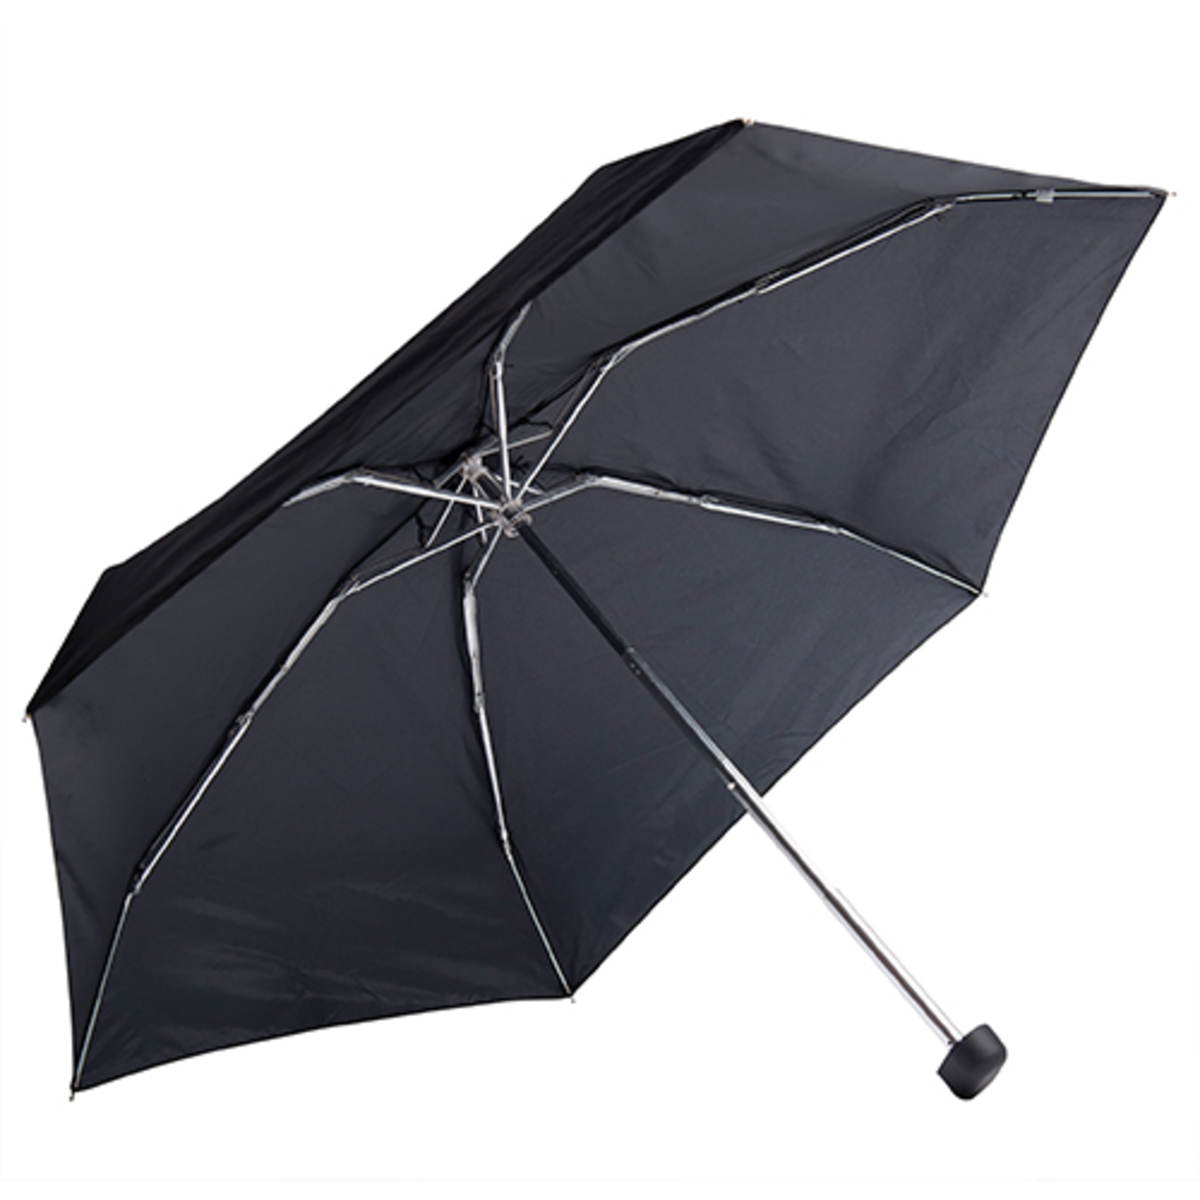 Pocket Umbrella-Blk-N/A-AUMBMINI